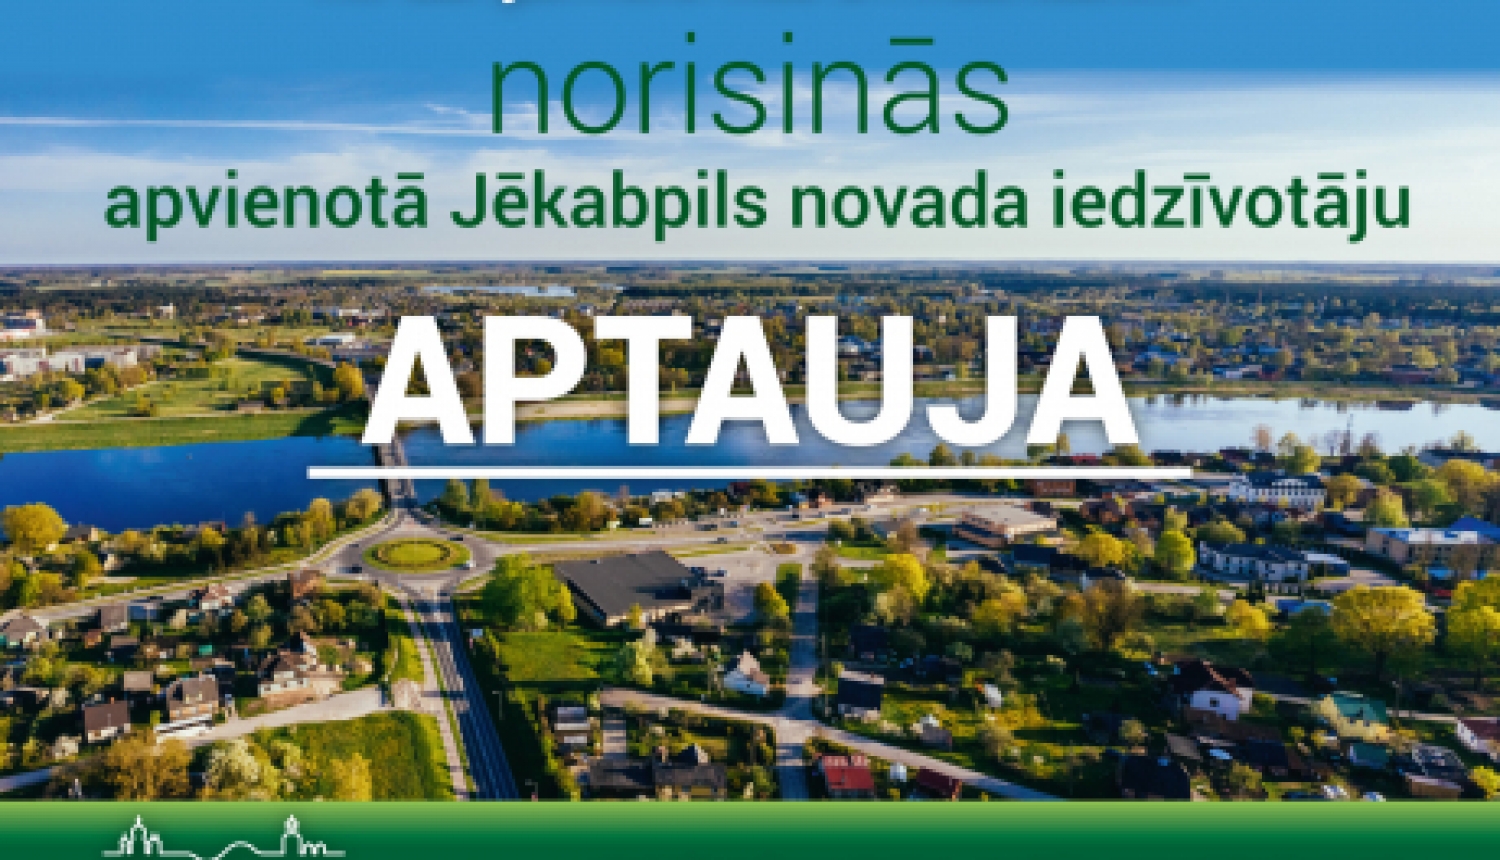 Vēl līdz 21.februārim aicinām piedalīties apvienotā Jēkabpils novada iedzīvotāju aptaujā!